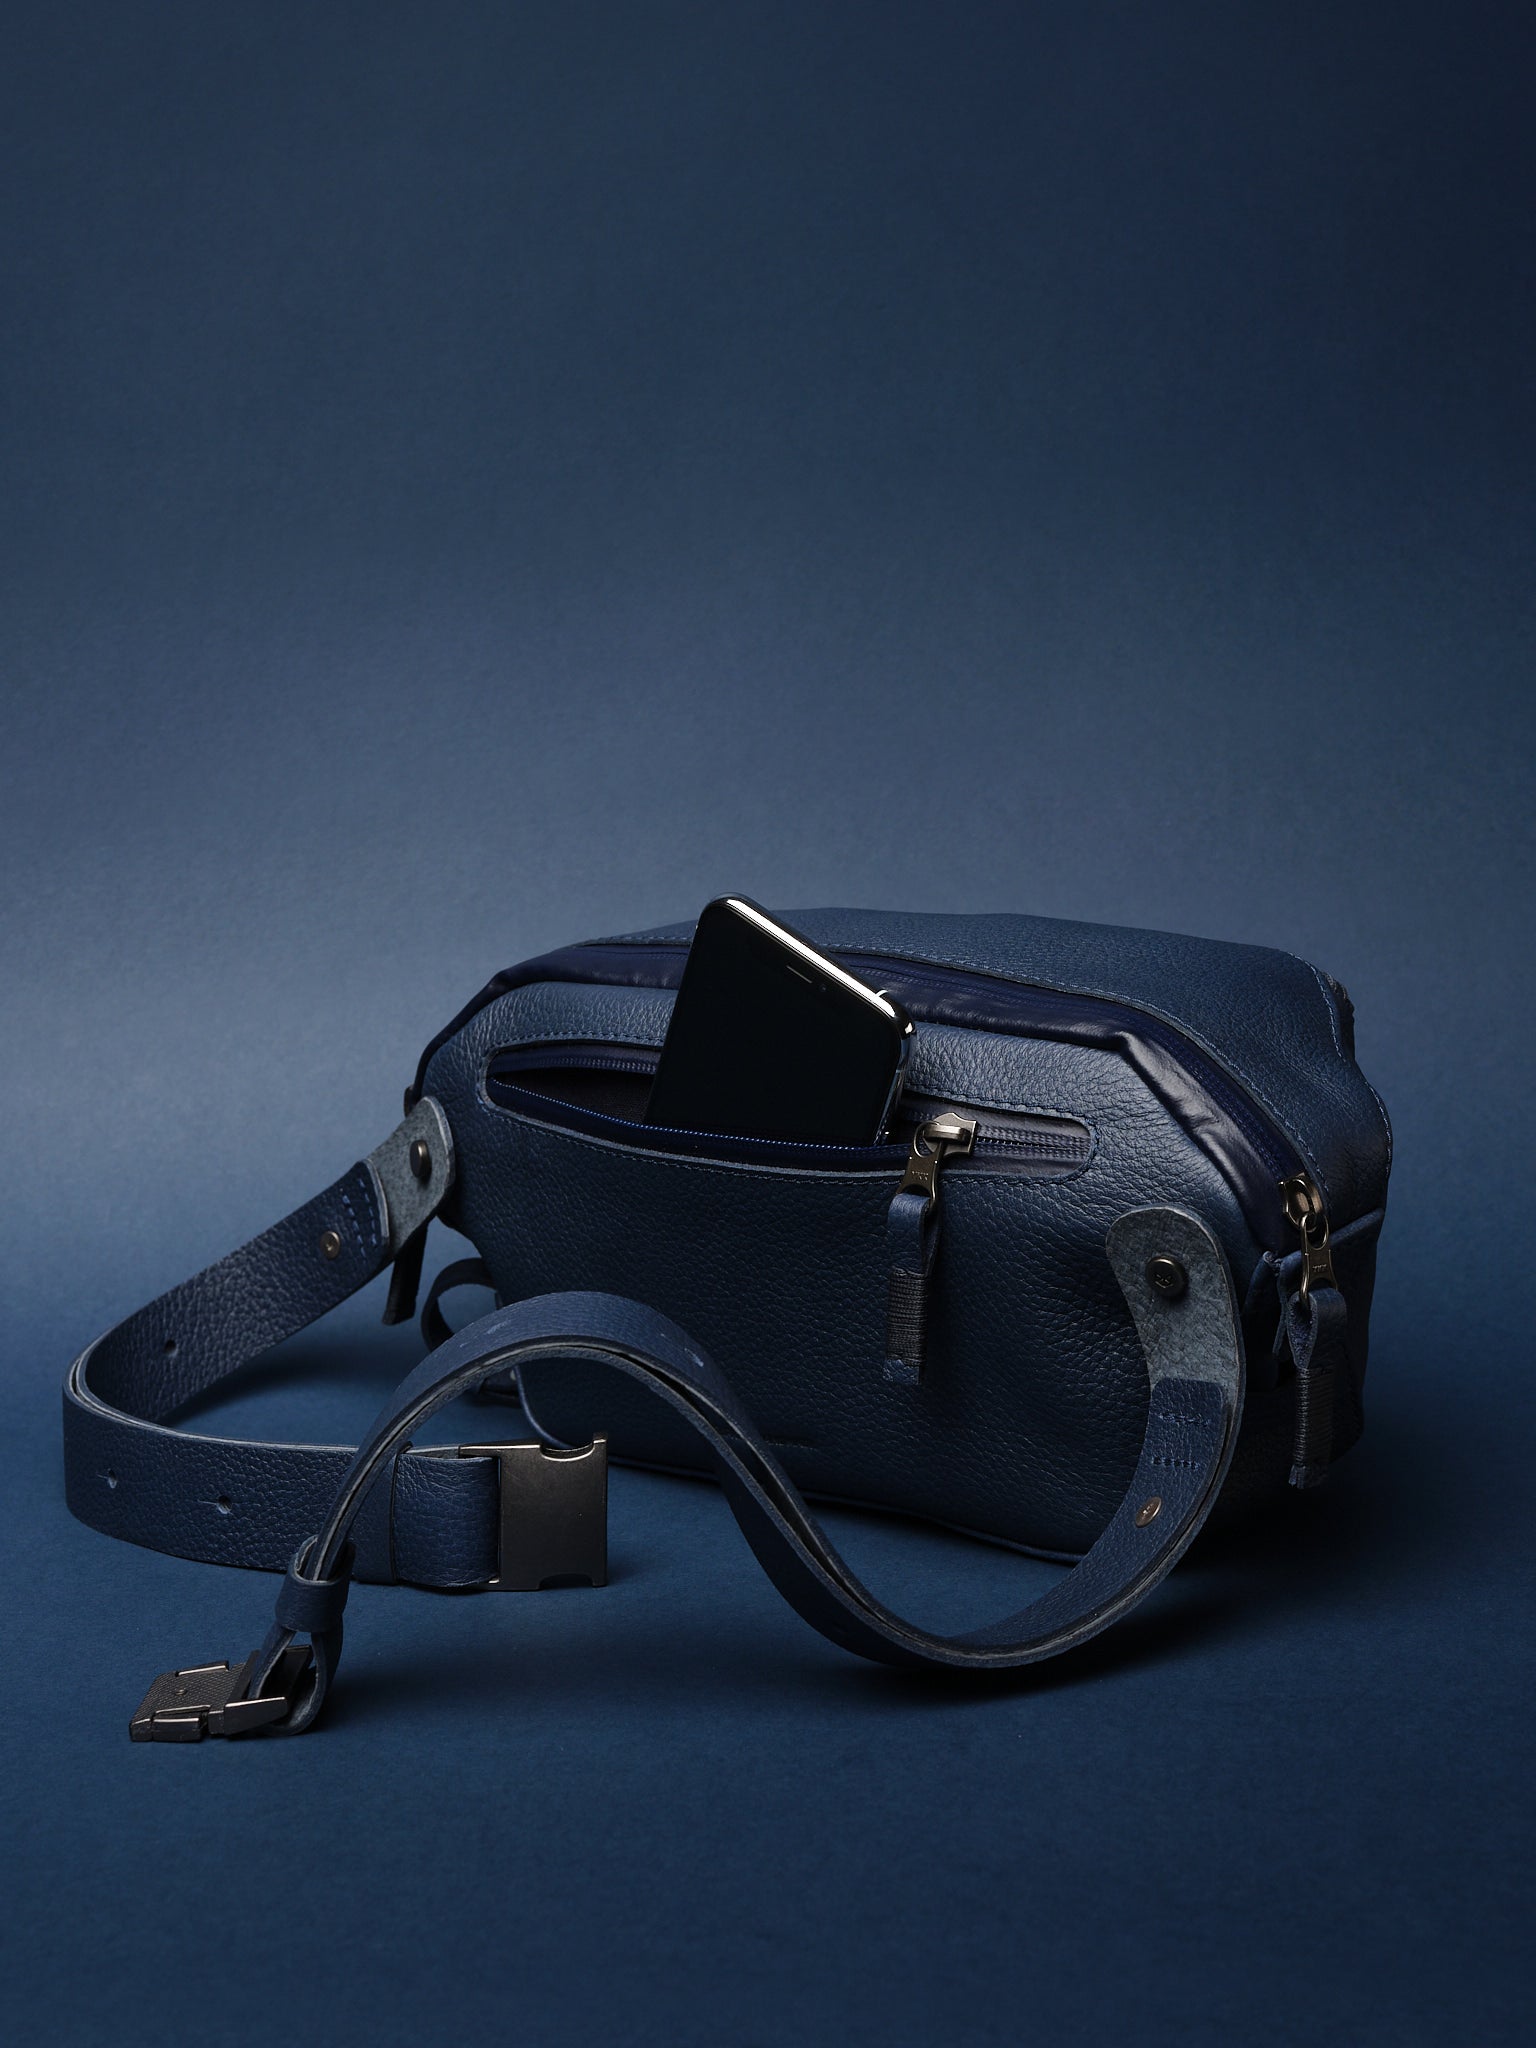 Mens Sling Bag. Designer Fanny Pack Navy by Capra Leather